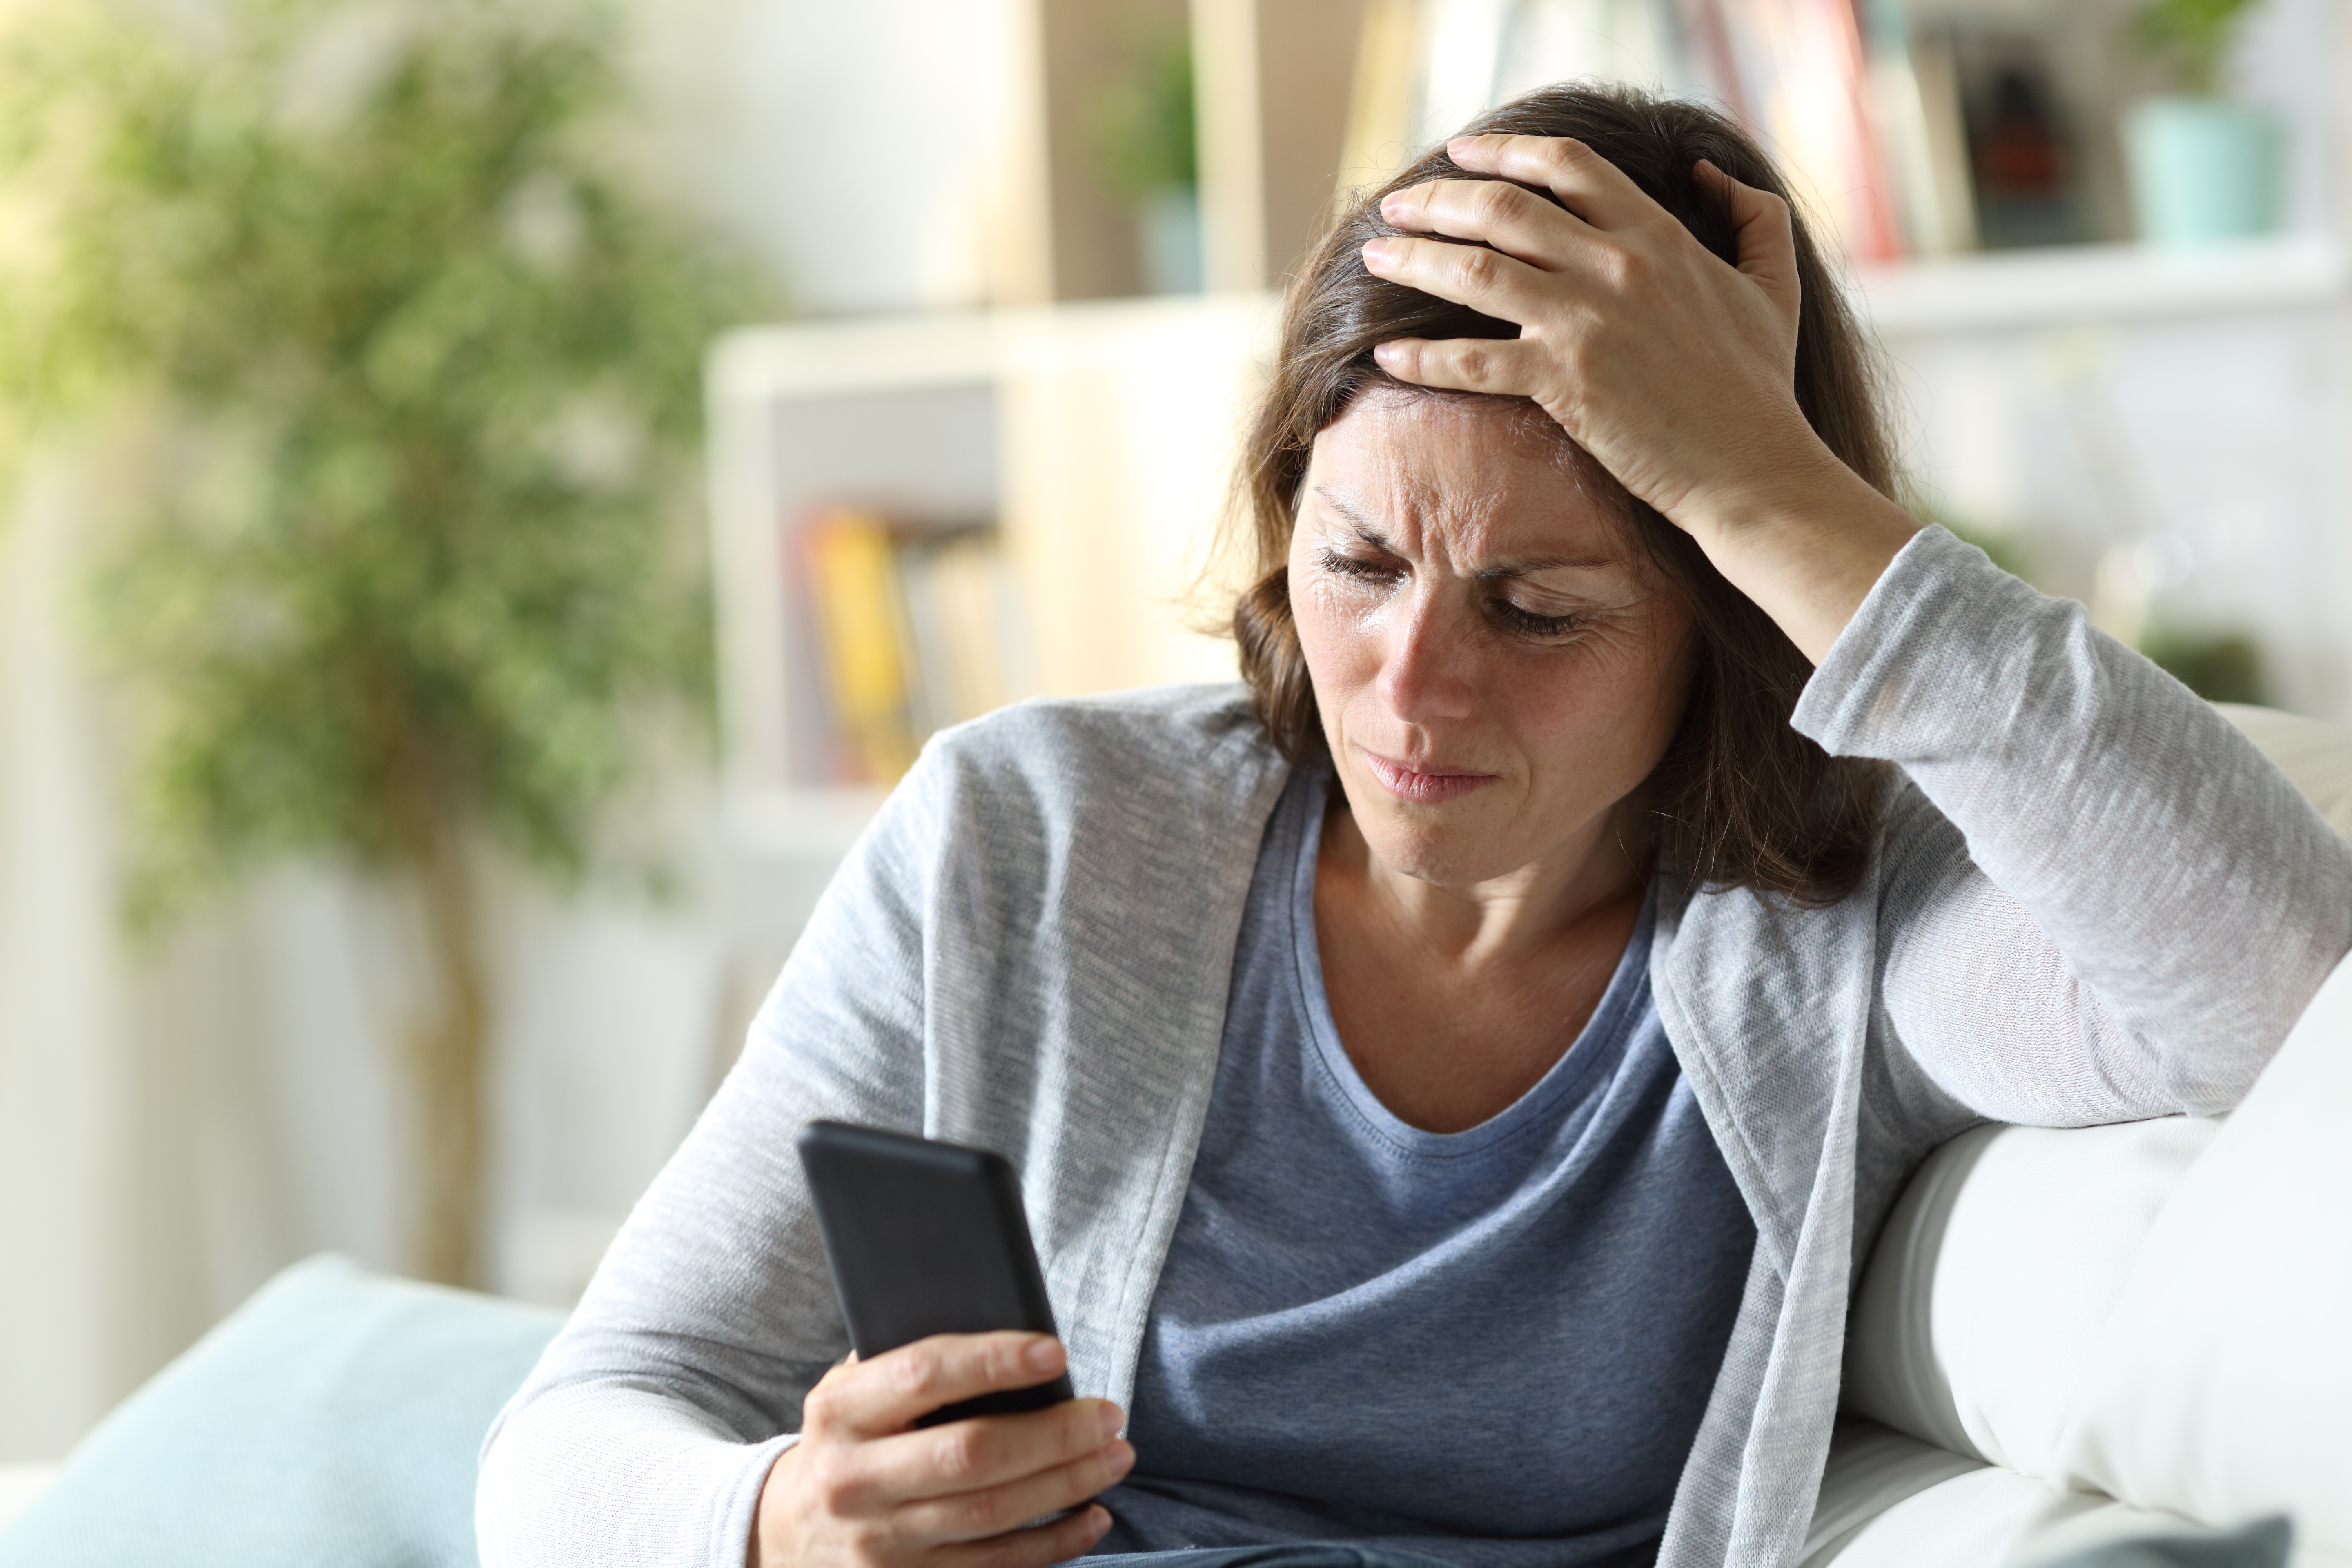 Une femme regardant son téléphone portable avec une expression confuse sur le visage | Source : Shutterstock